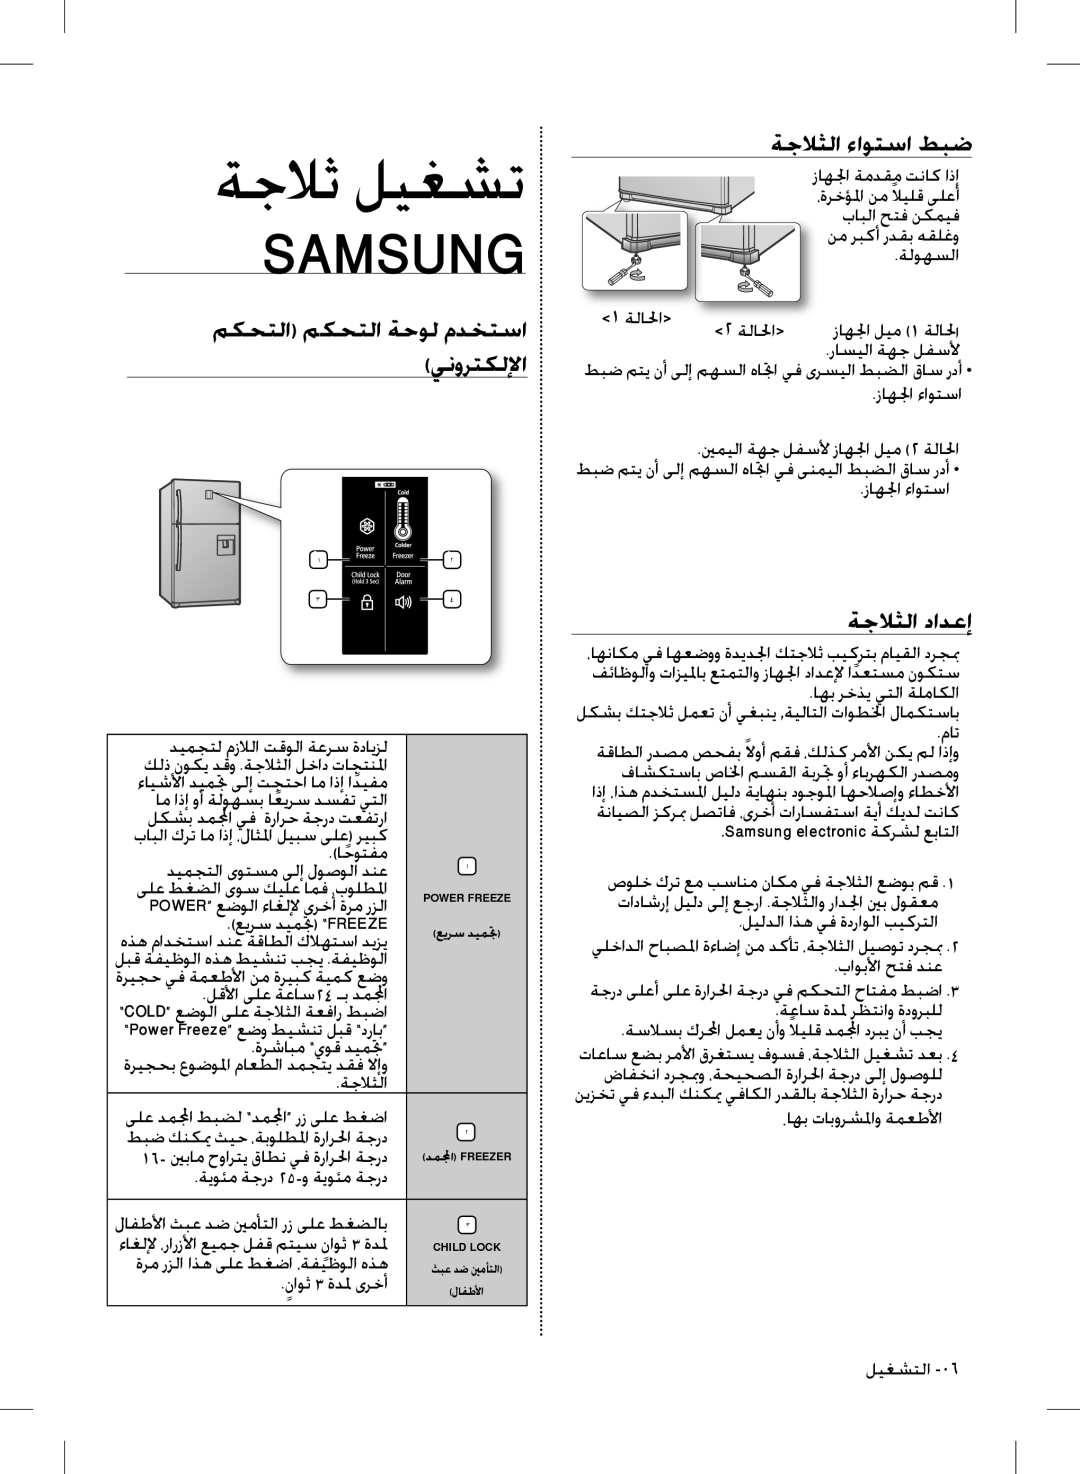 Samsung RT63NBEW1/HAC manual ةجلاث ليغشت, Samsung, مكحتلا مكحتلا ةحول مدختسا ينورتكللإا, ةجلاثلا ءاوتسا طبض, ةجلاثلا دادعإ 